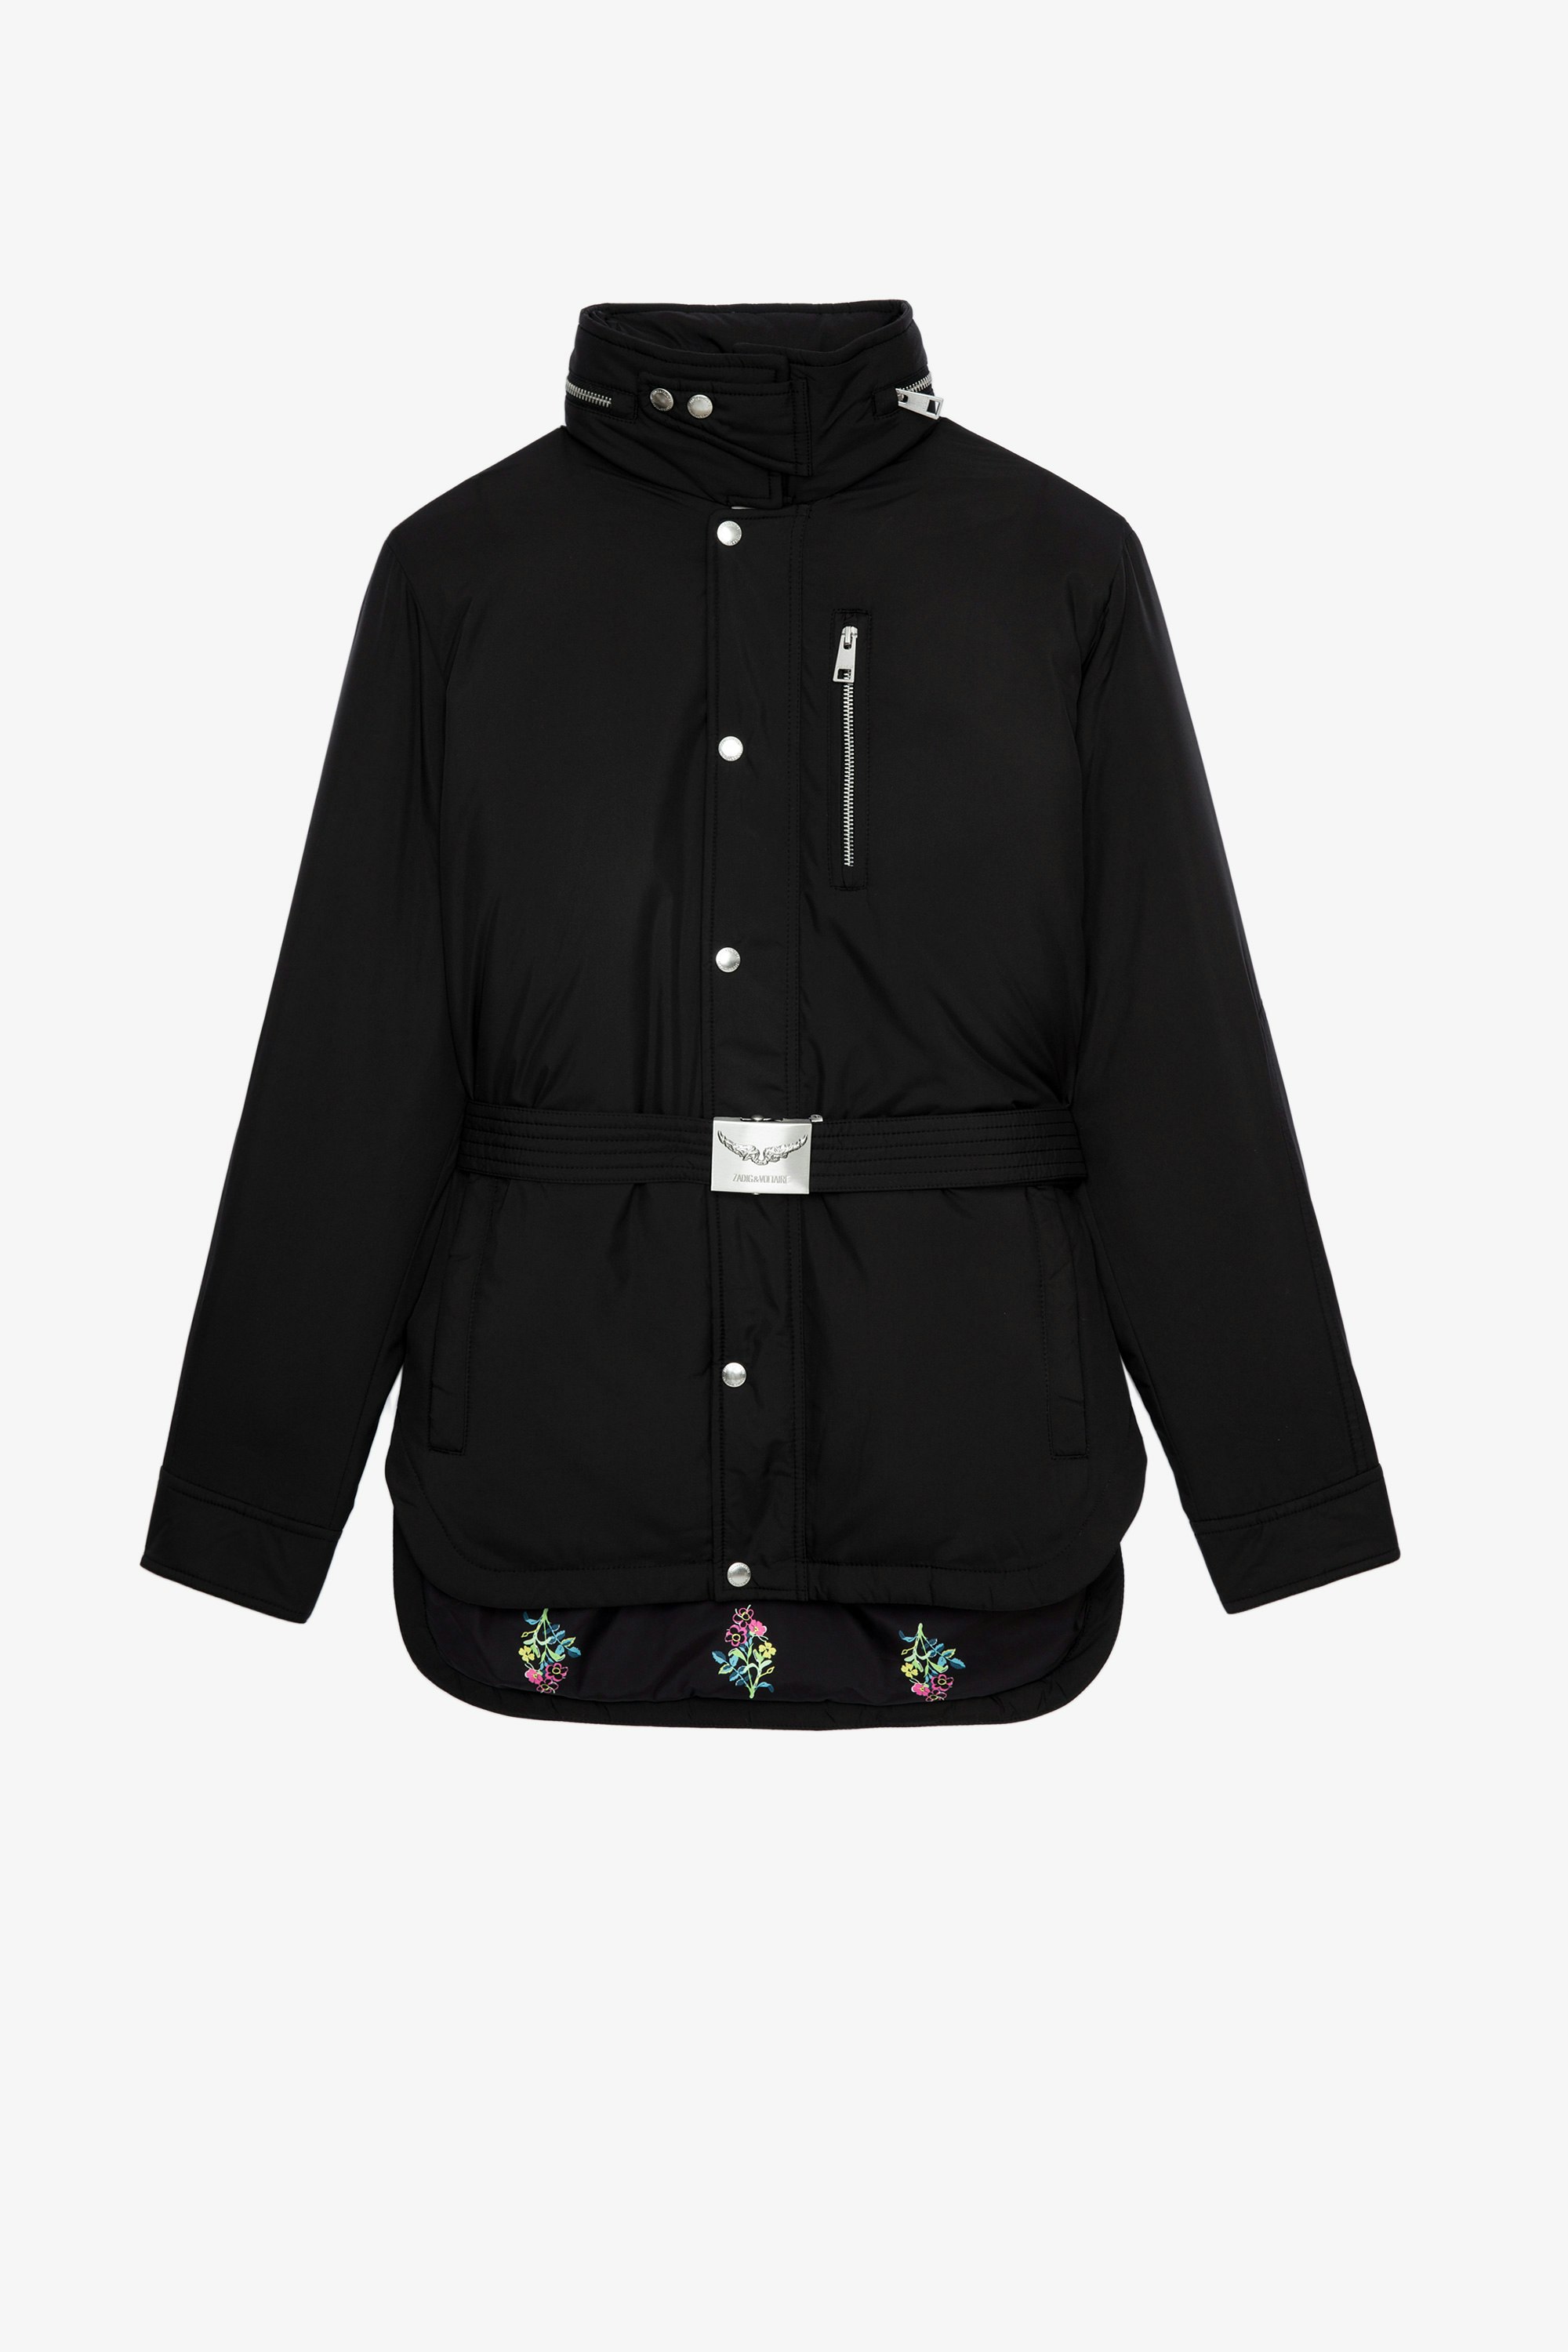 Mantel Kalice Damenmantel aus schwarzem Nylon mit Kapuze und Gürtel mit Schließe